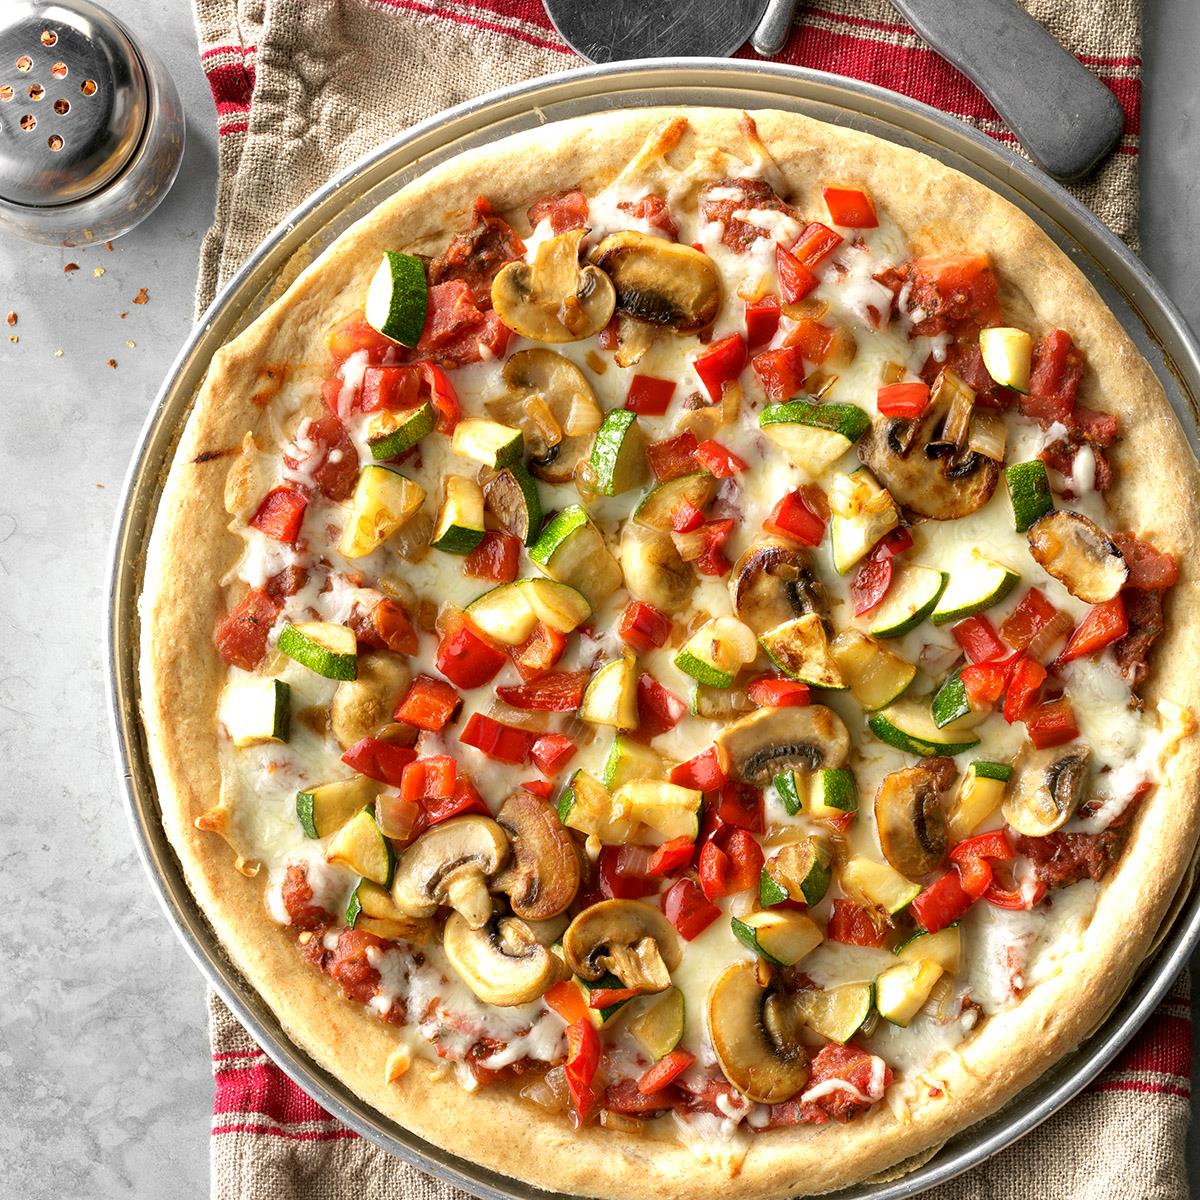 16 oz pizza crust recipe vegan